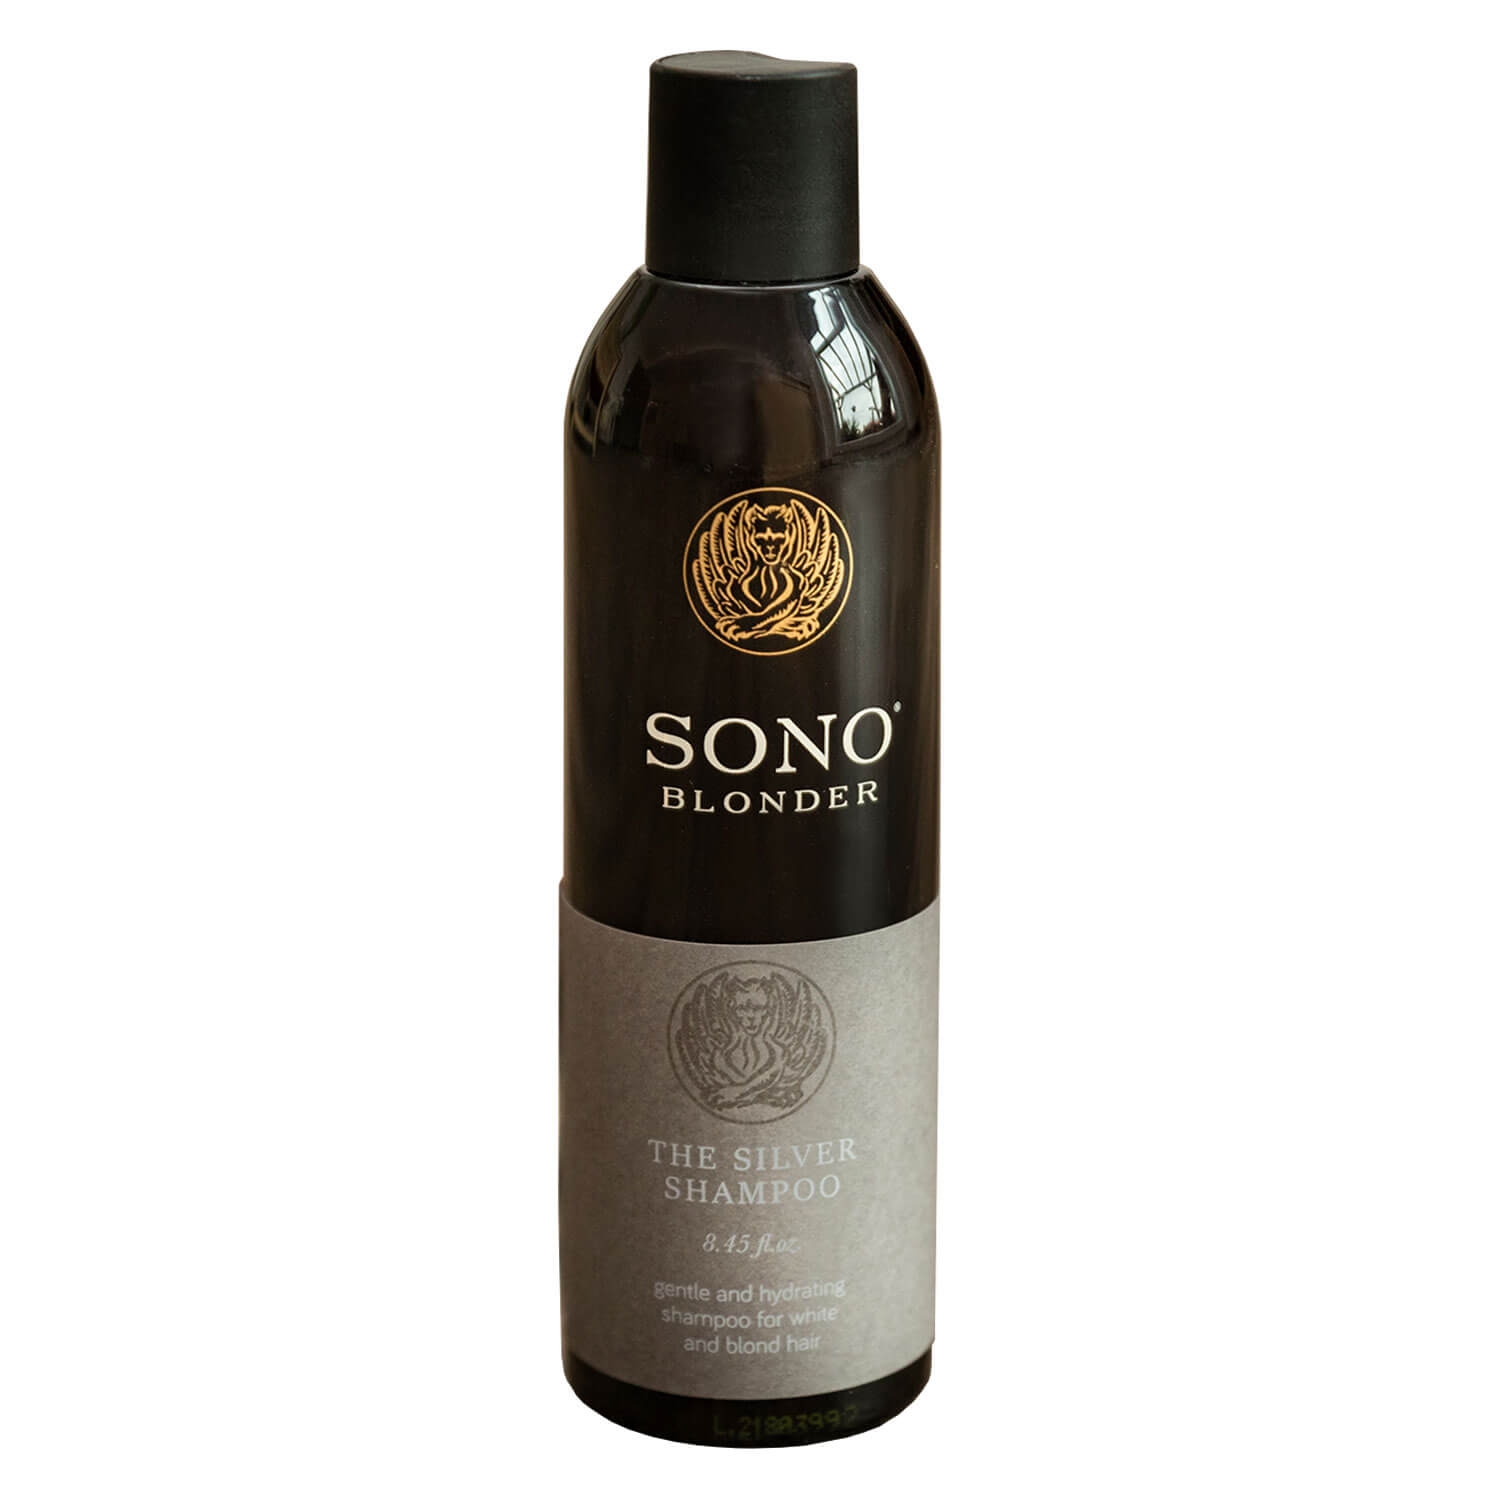 Produktbild von SONO Blonder - The Silver Shampoo